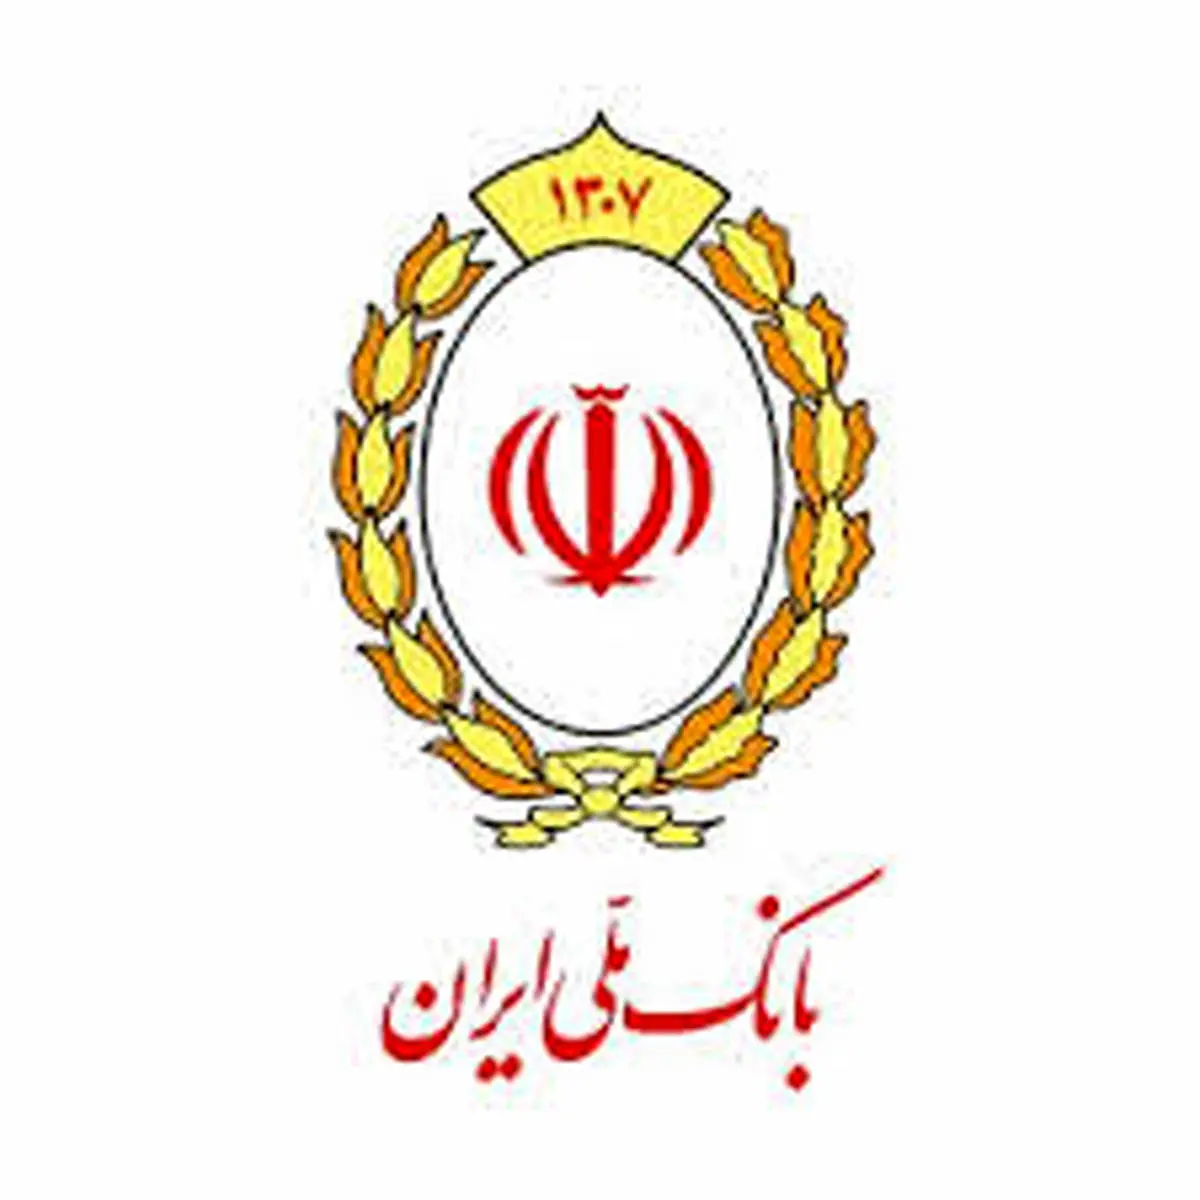 شفاف سازی بانک ملی ایران درباره سود قطعی اوراق مشارکت شرکت نفت و گاز پارس

